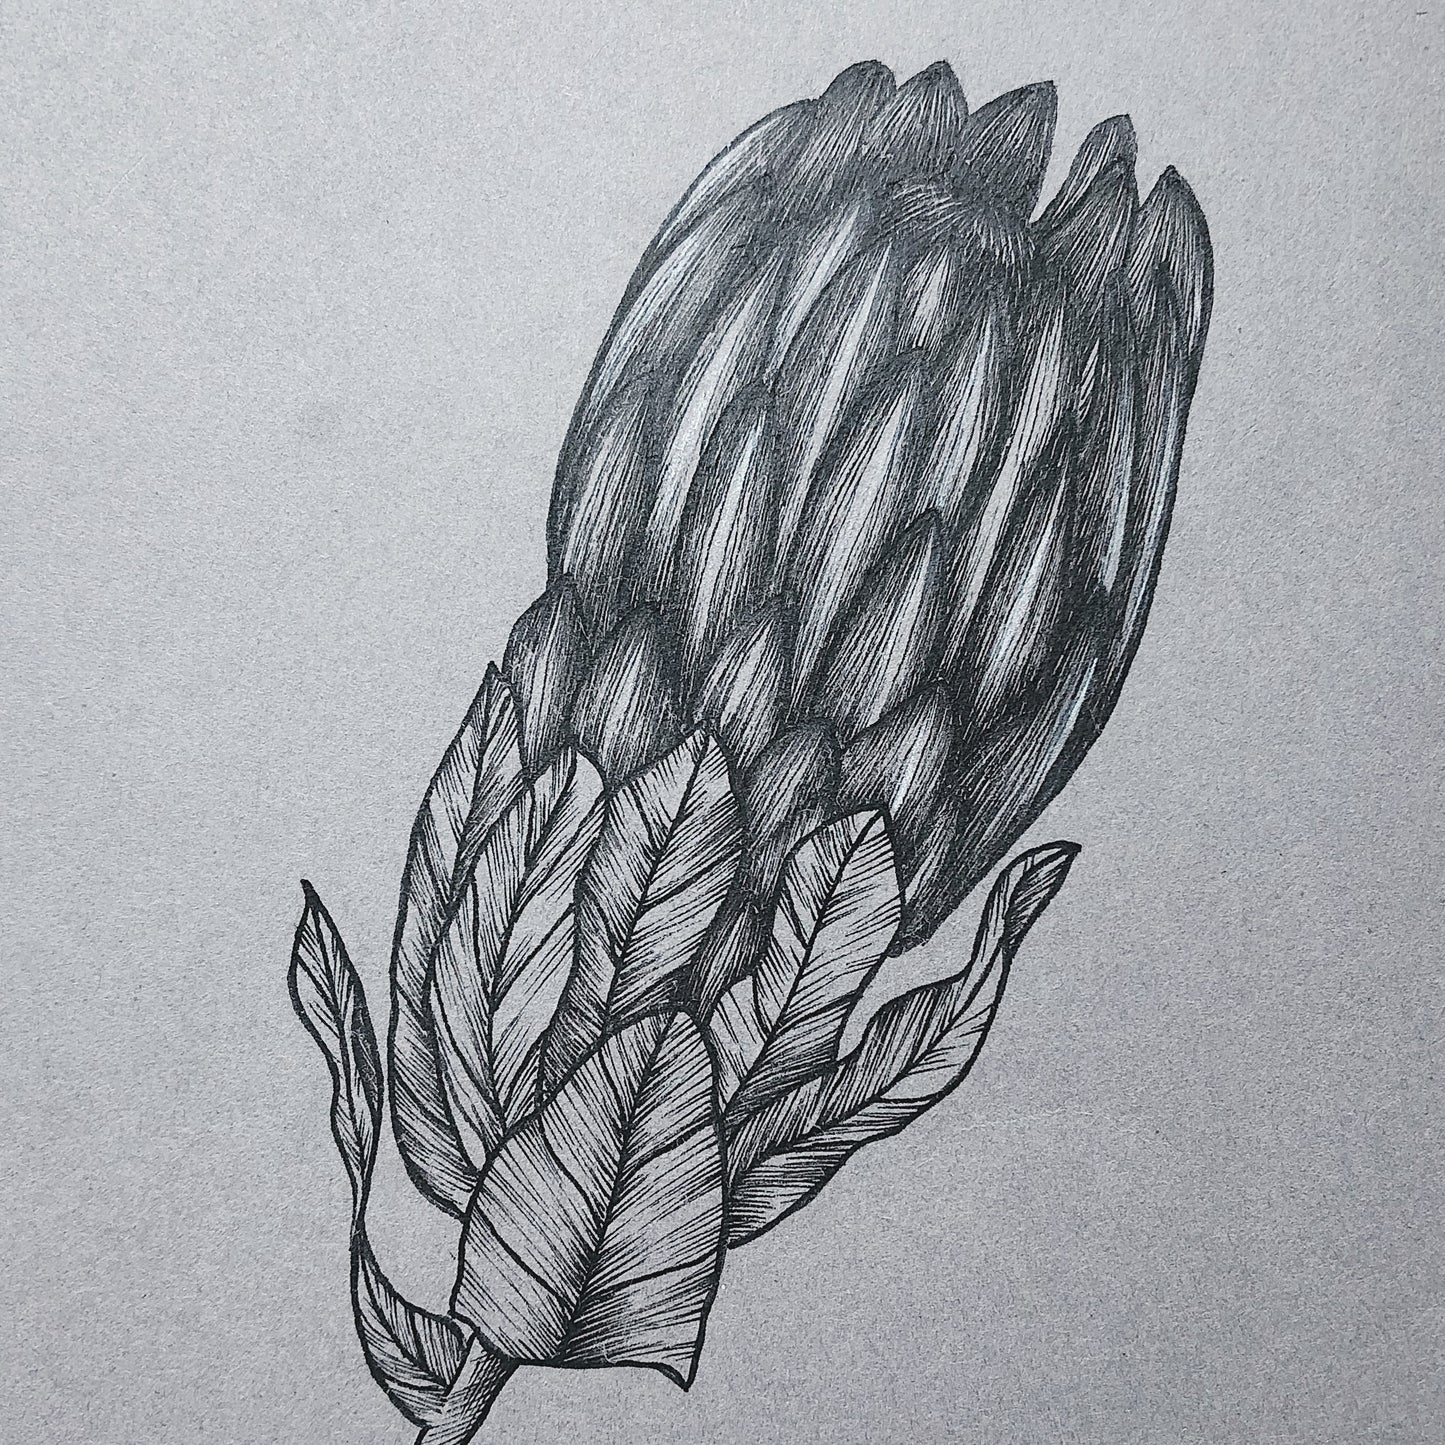 Framed Botanical Illustrations | Protea